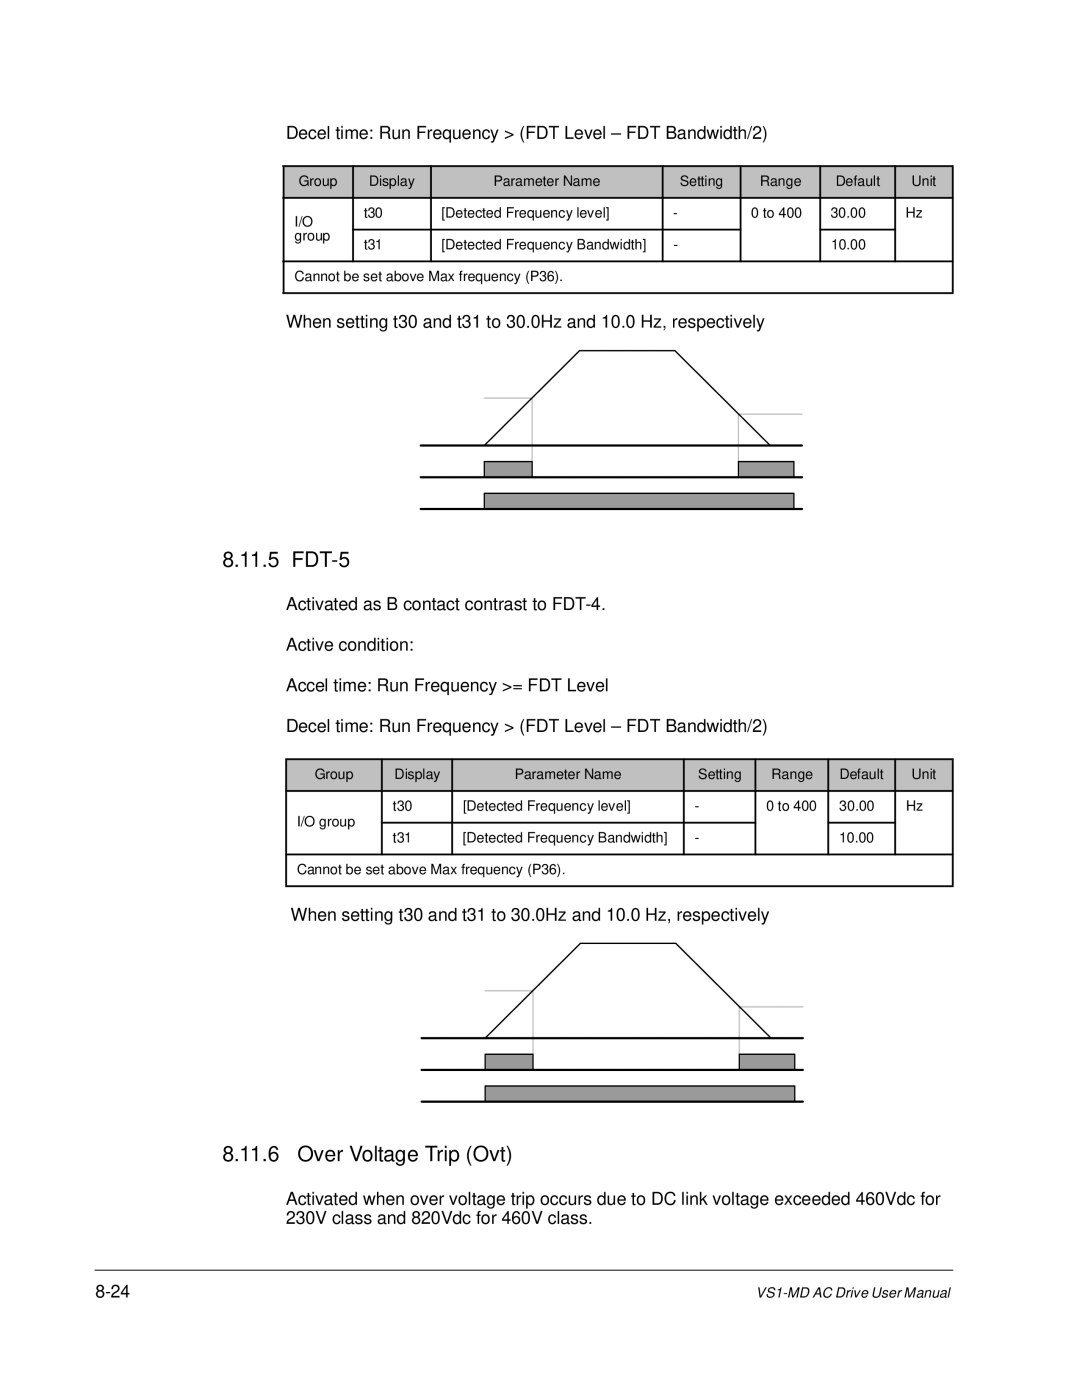 Baldor VS1MD instruction manual 11.5, Over Voltage Trip Ovt 